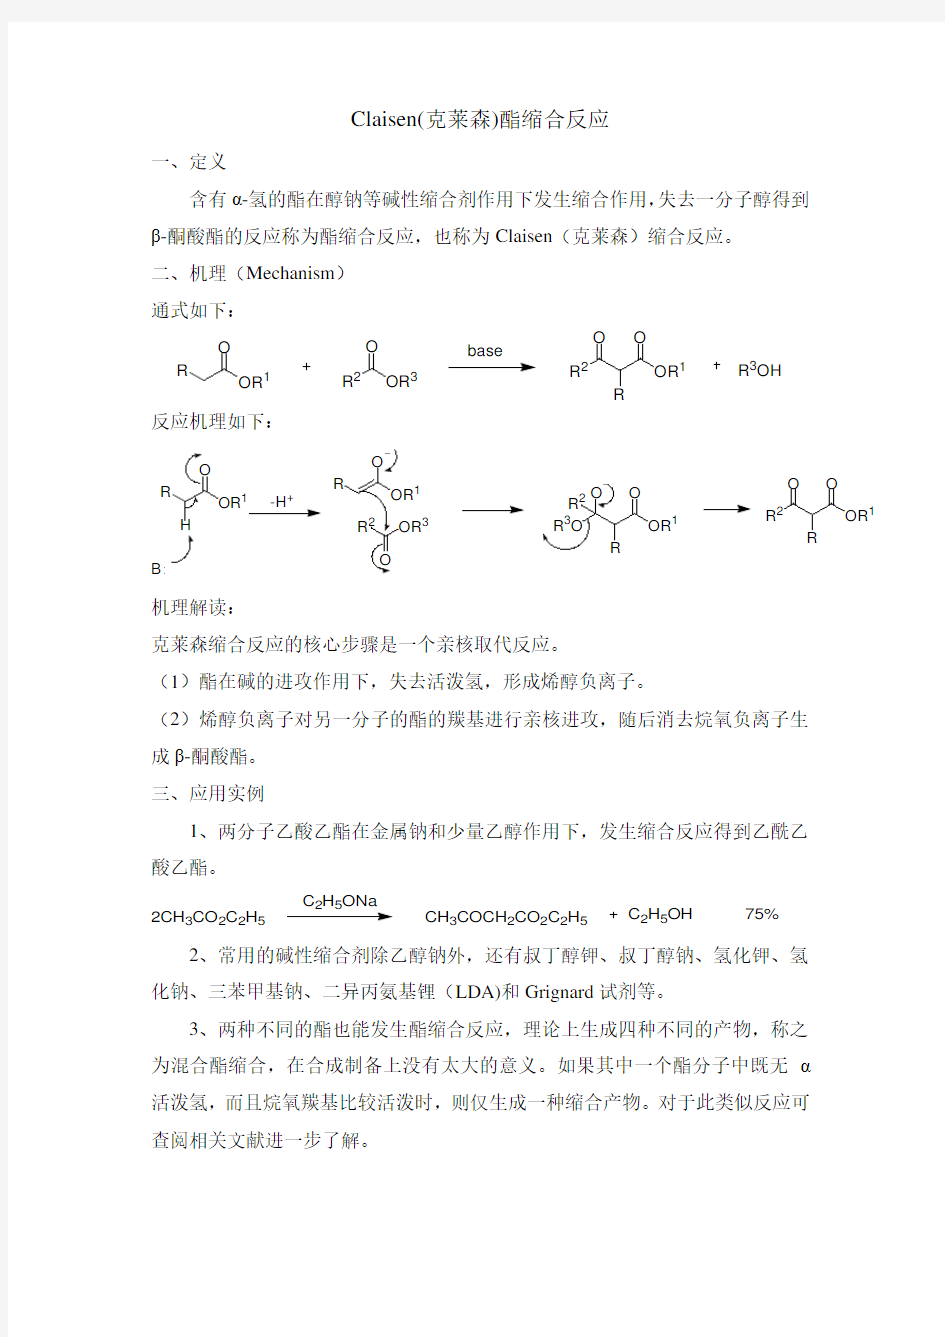 Claisen酯缩合反应及机理